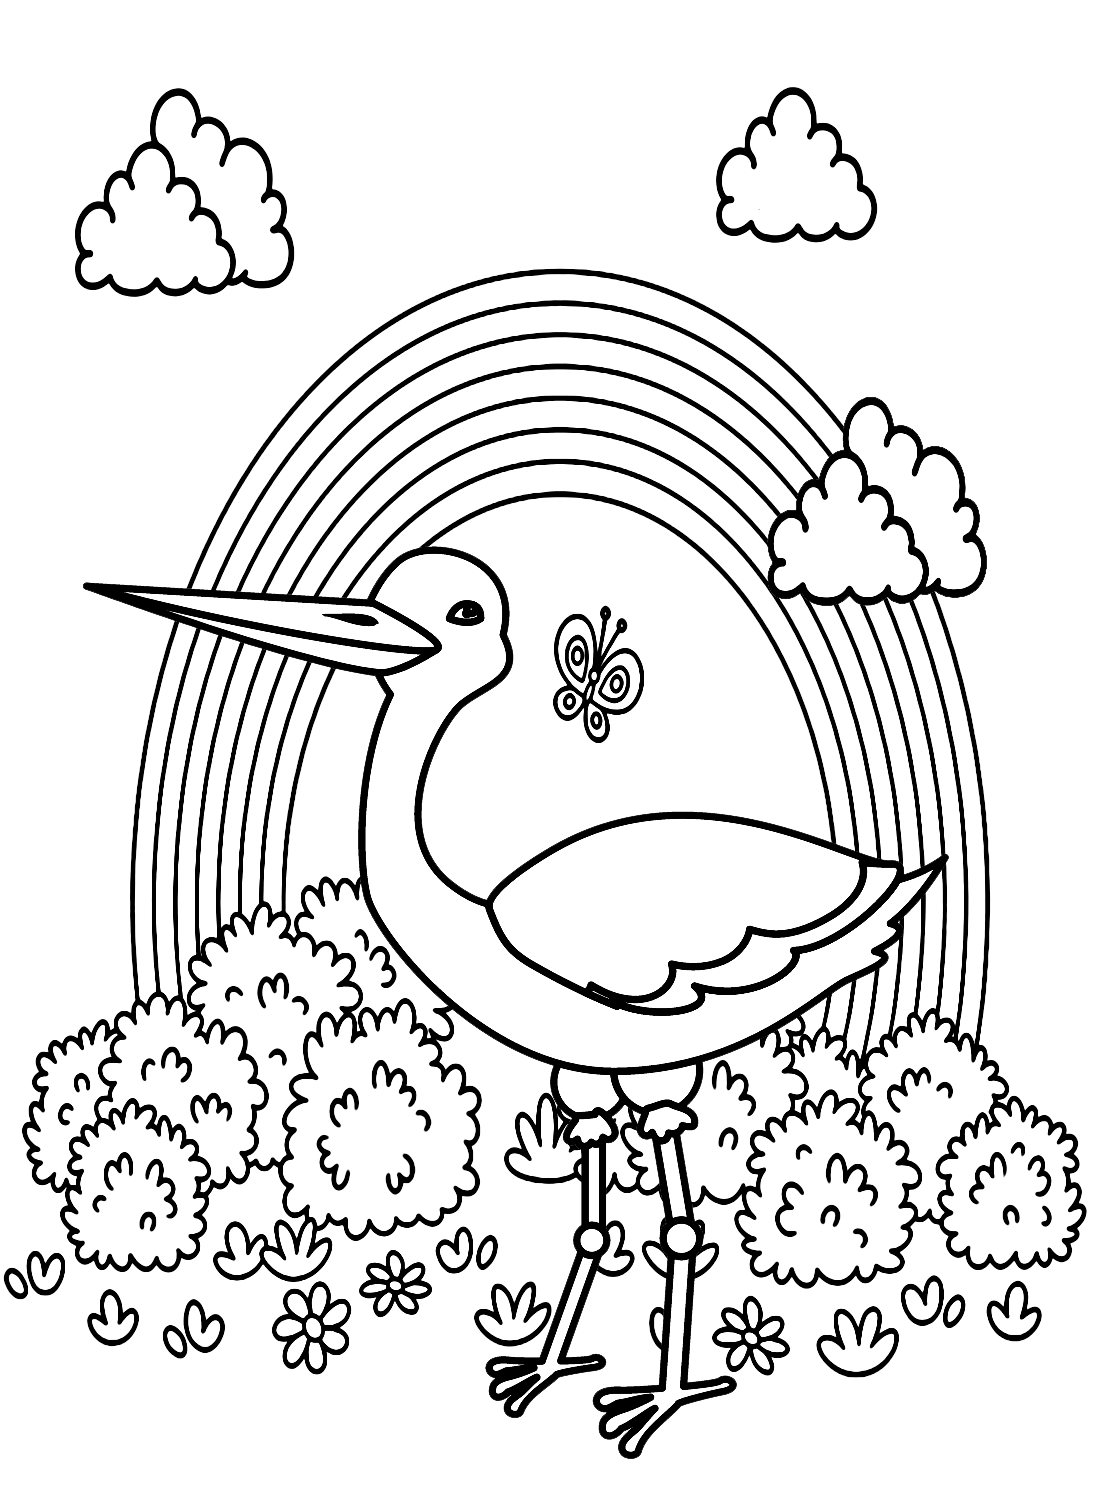 Аист с радугой от Stork